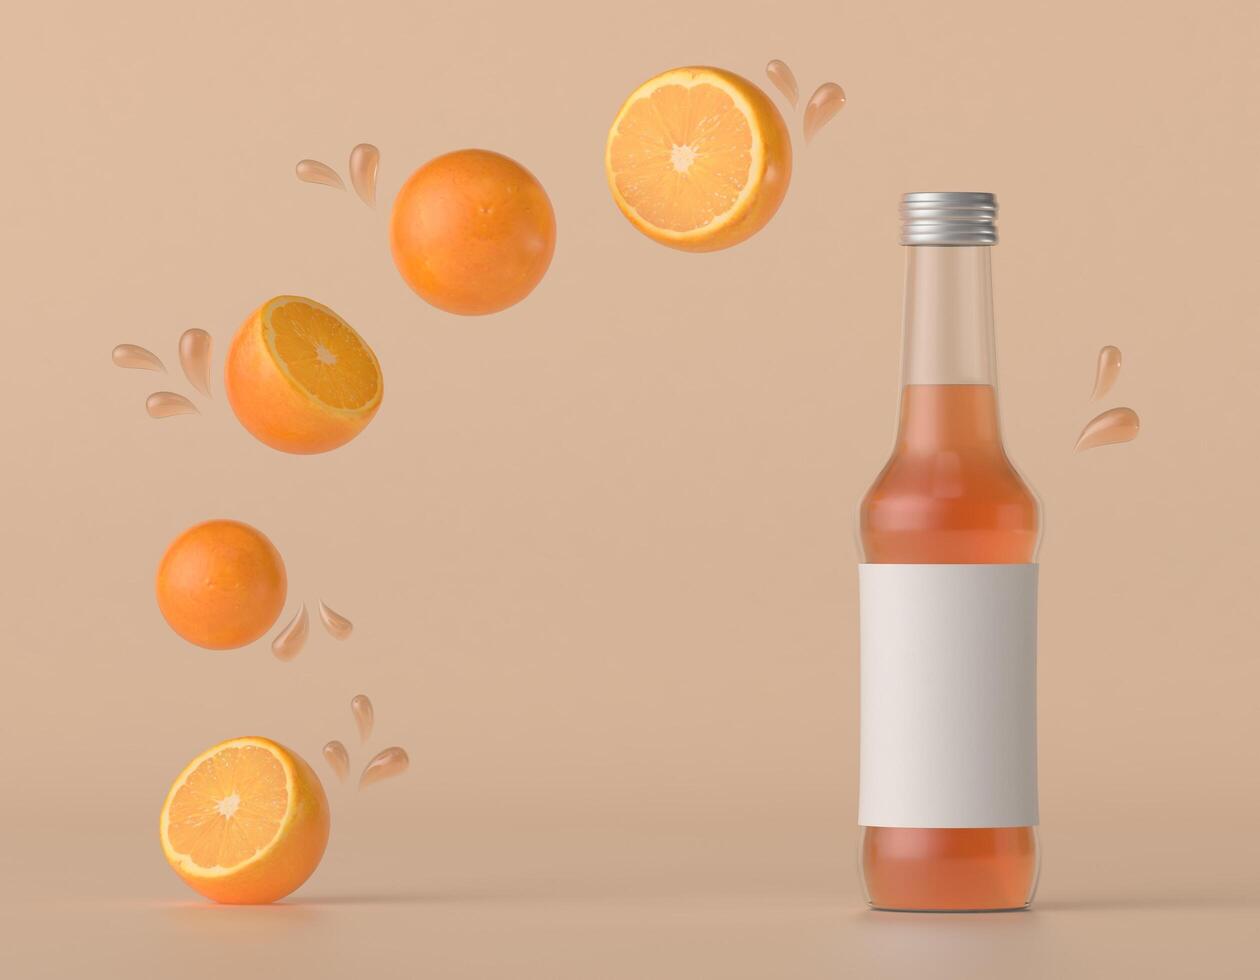 una bottiglia usata per confezionare il succo d'arancia con le arance. foto